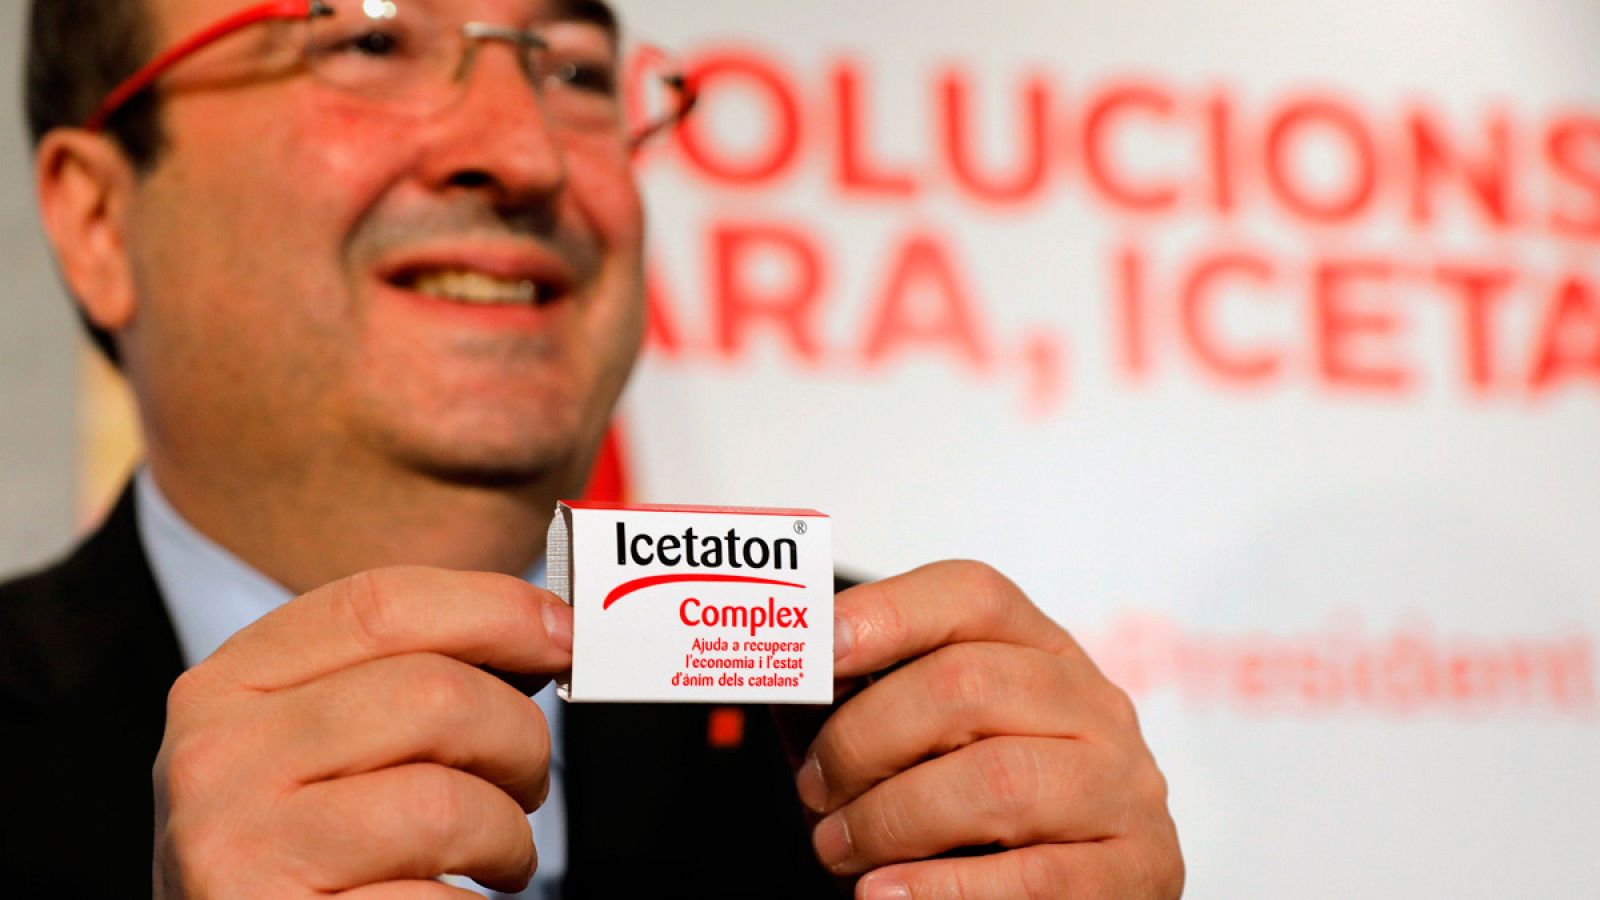 El candidato del PSC a la presidencia de la Generalitat, Miquel Iceta, muestra una caja de caramelos "Icetaton", en un acto electoral sobre políticas europeas en Barcelona